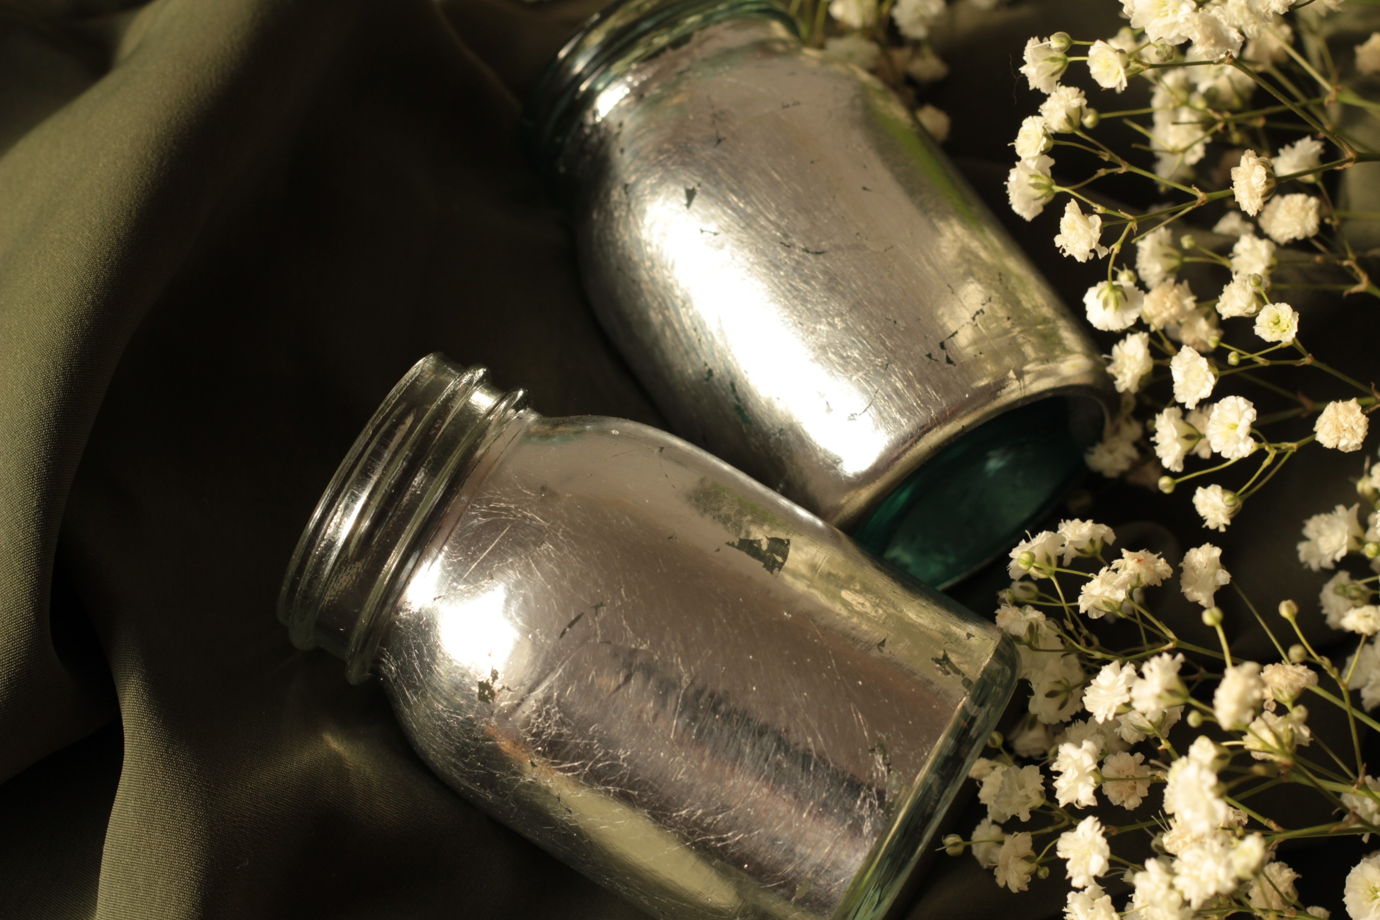 Пара золоченых ваз из старинных баночек | Bloom 136